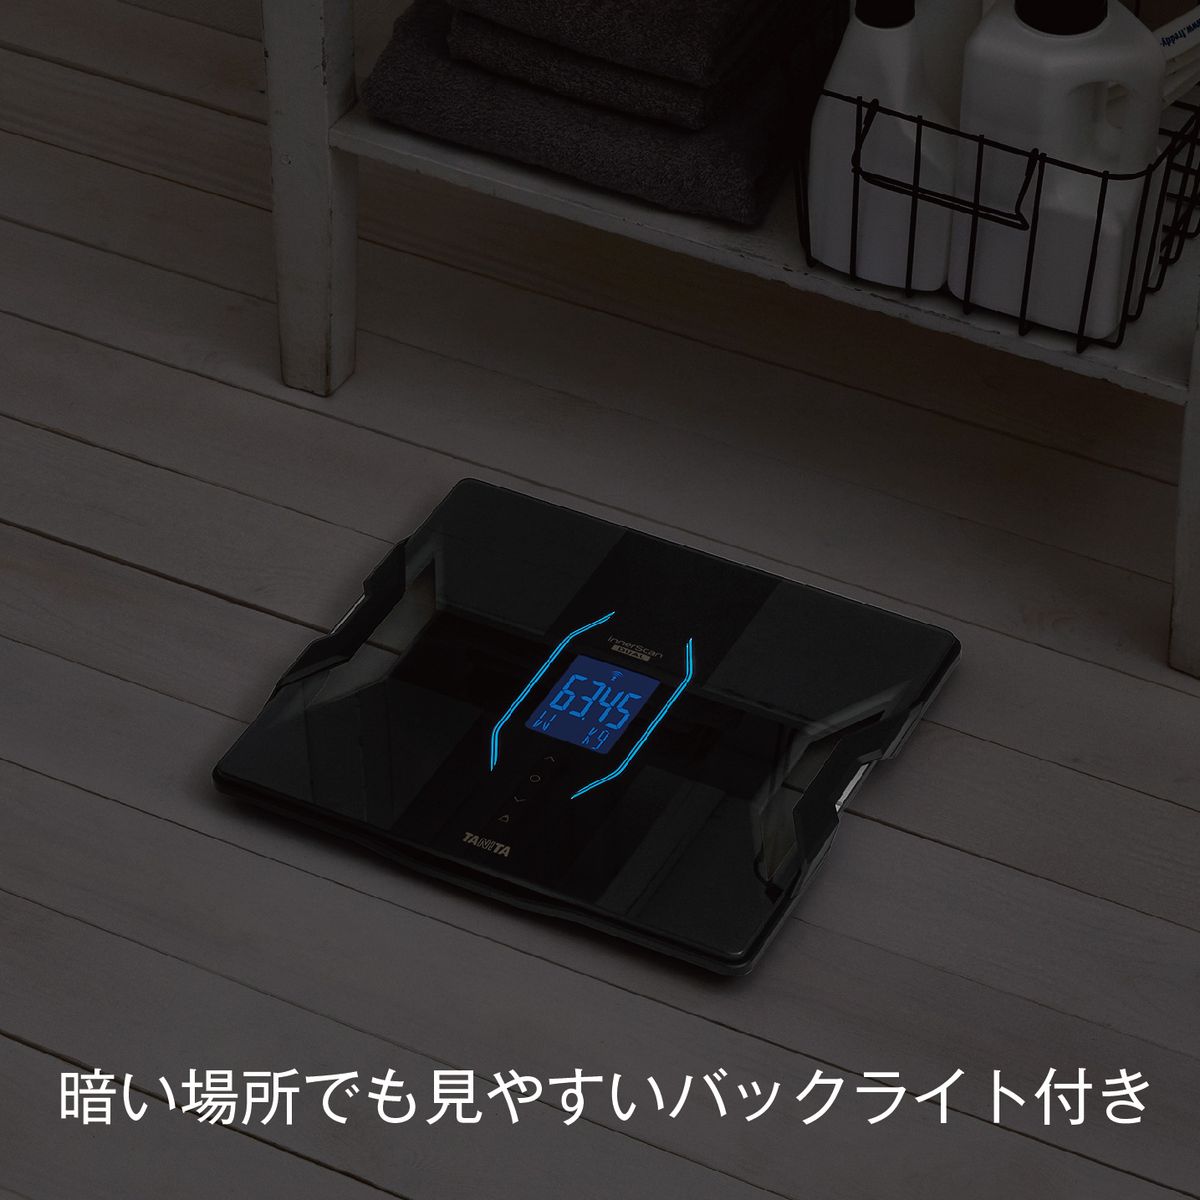 体組成計 体重計 innerScan DUAL(インナースキャンデュアル) ブラック スマホ連動 日本製